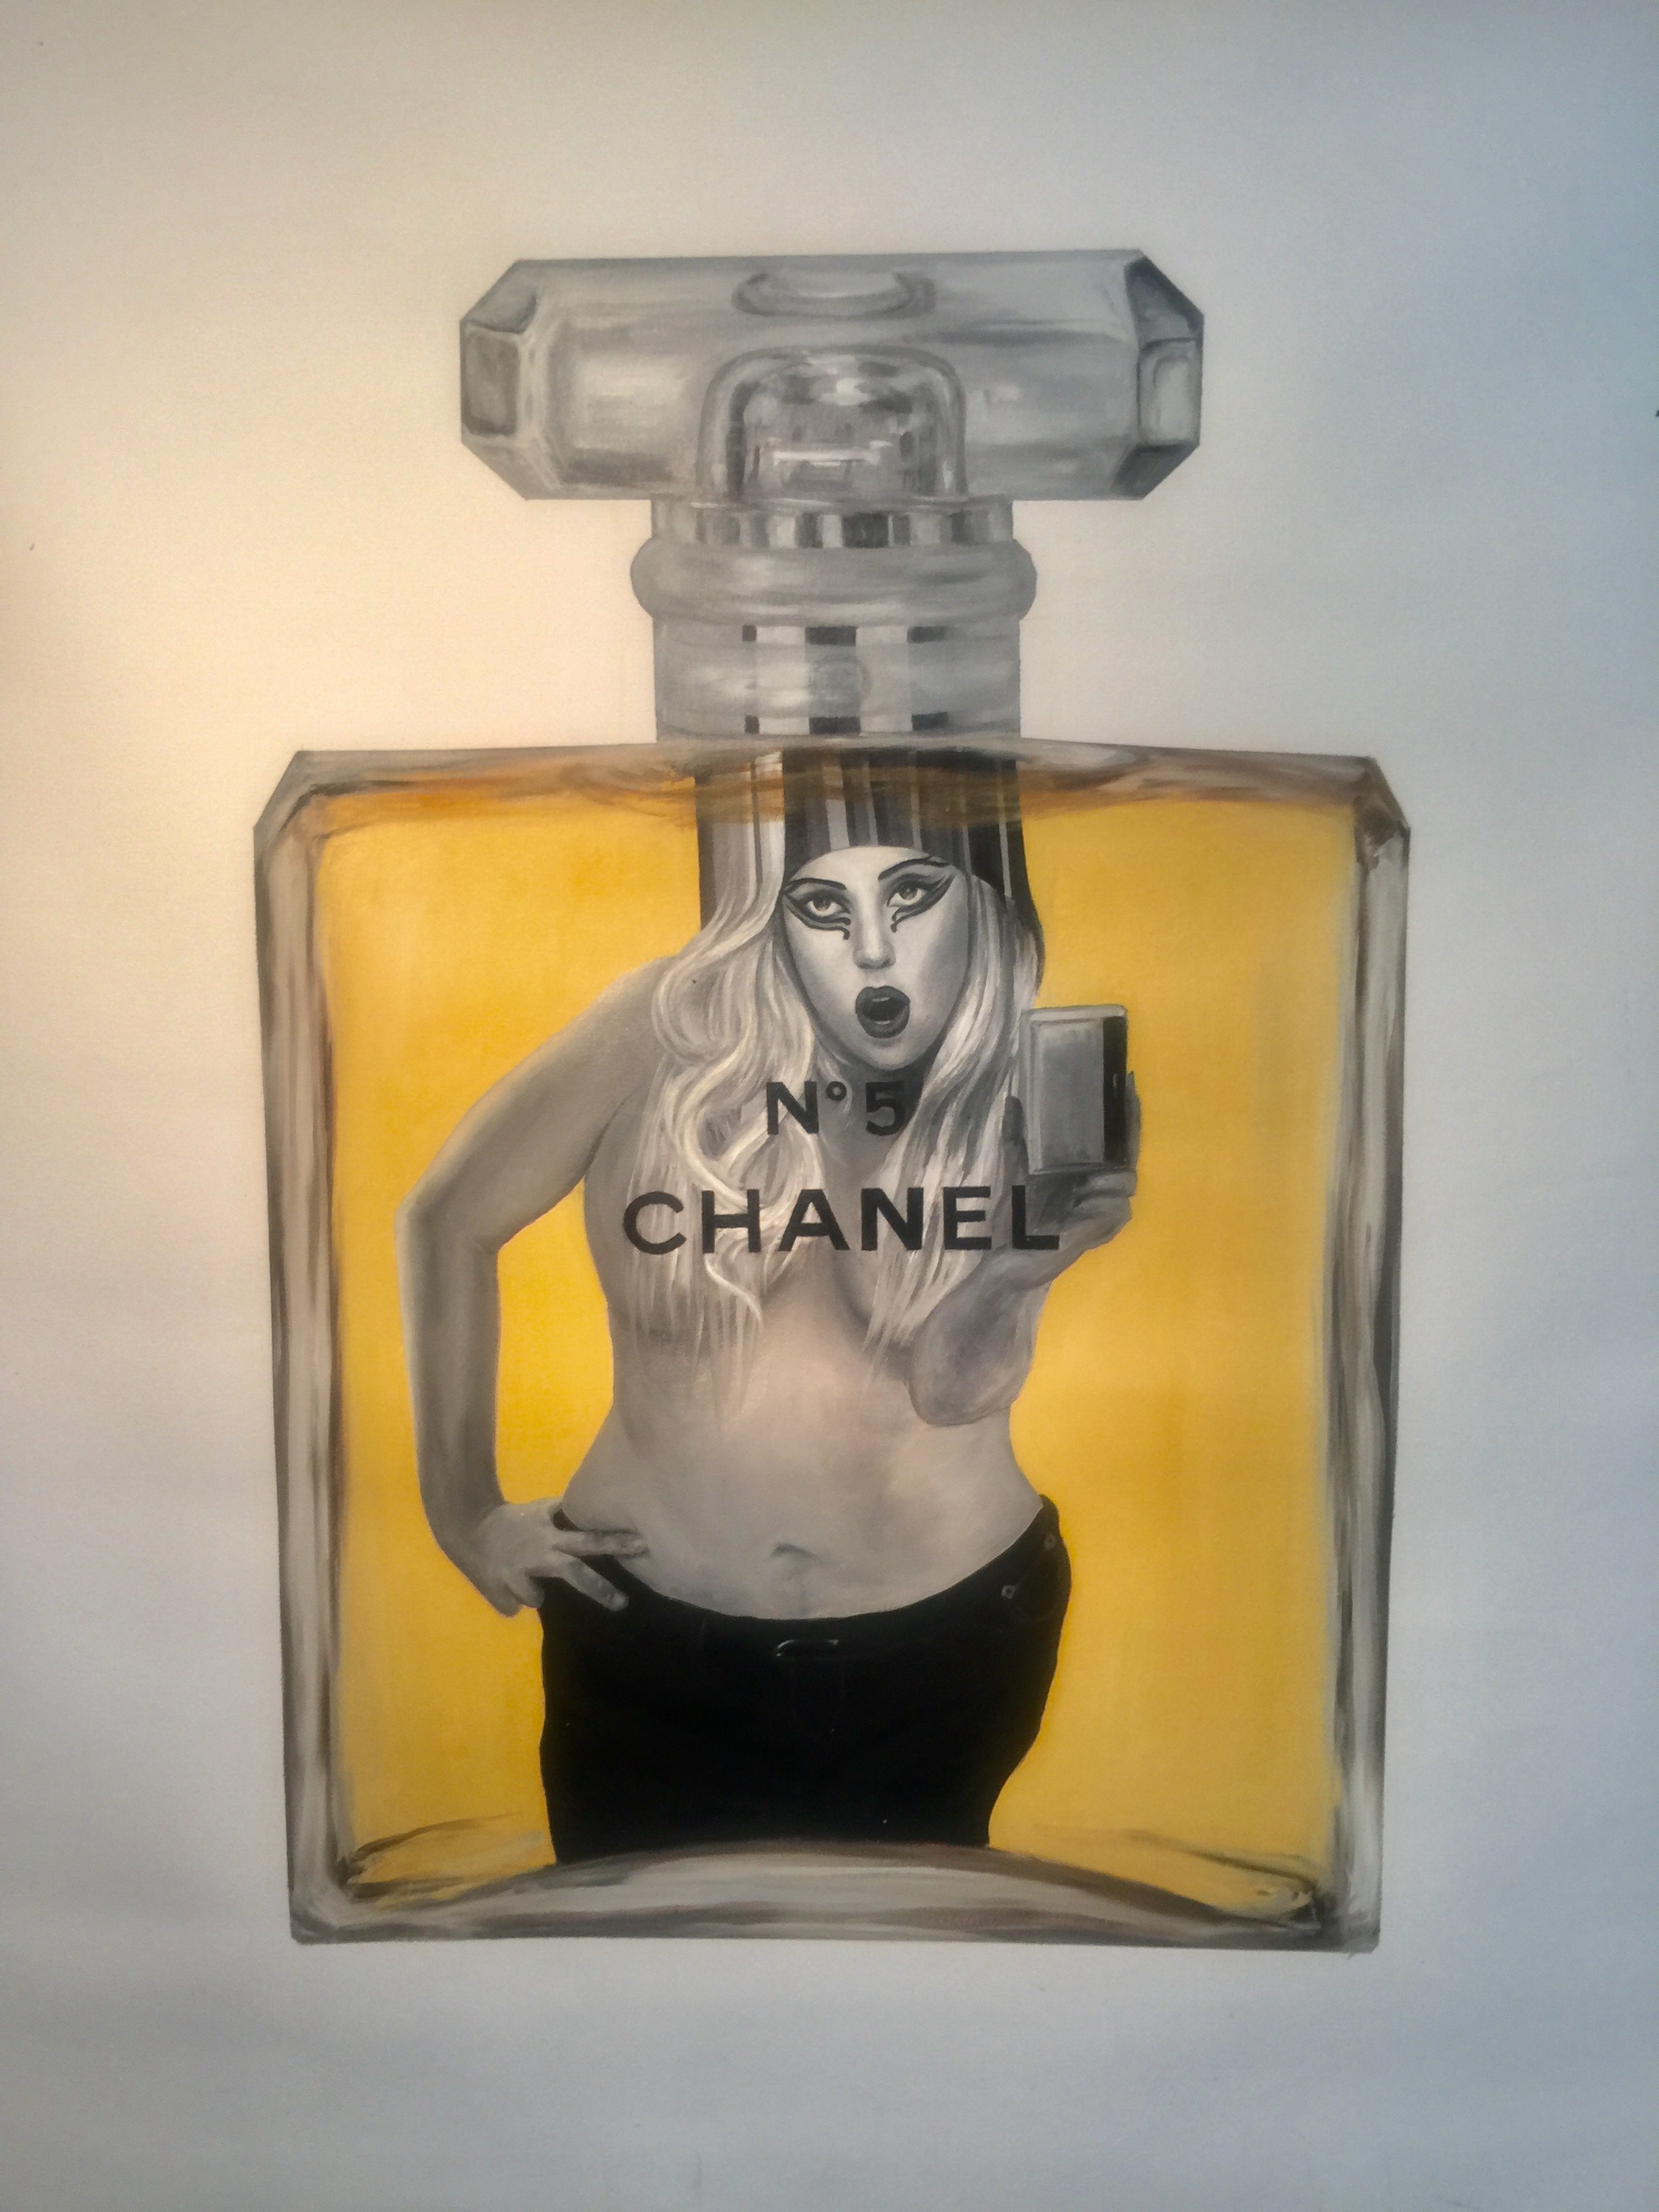  I am Lady Gaga - Oil on Canvas 60x60 inch 2016 